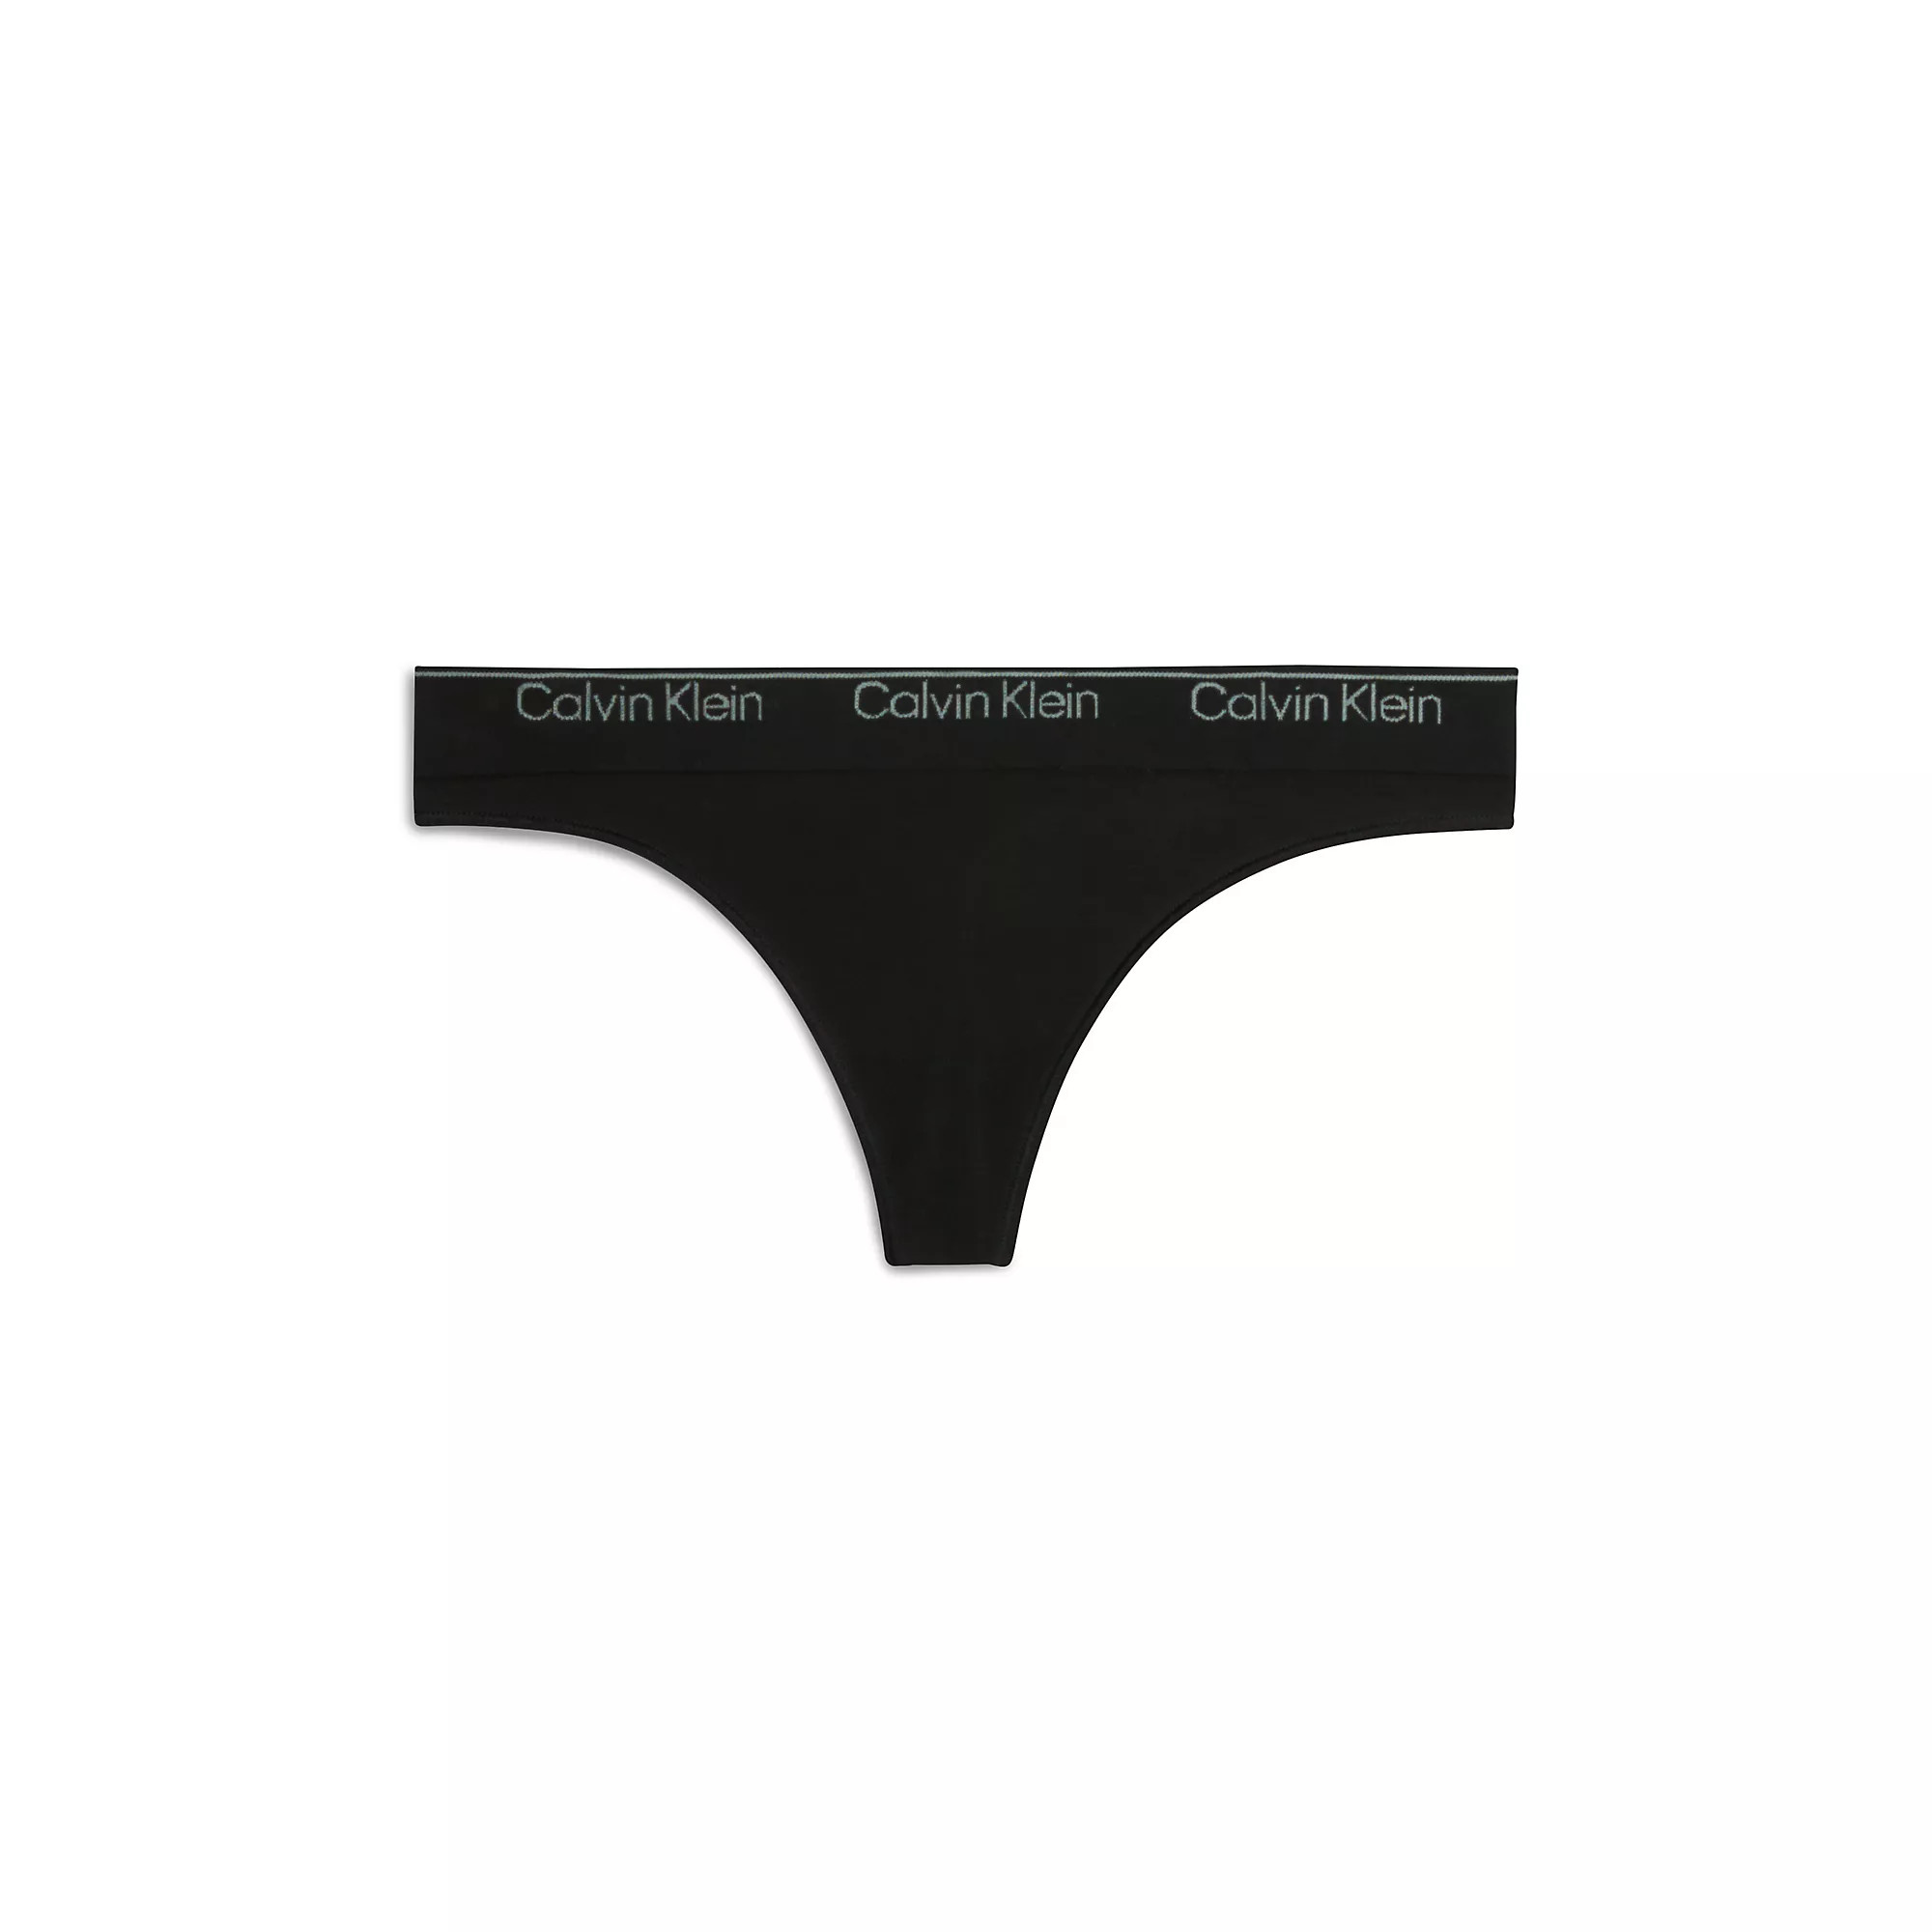 Spodní prádlo Dámské kalhotky THONG 000QF7095EUB1 - Calvin Klein M